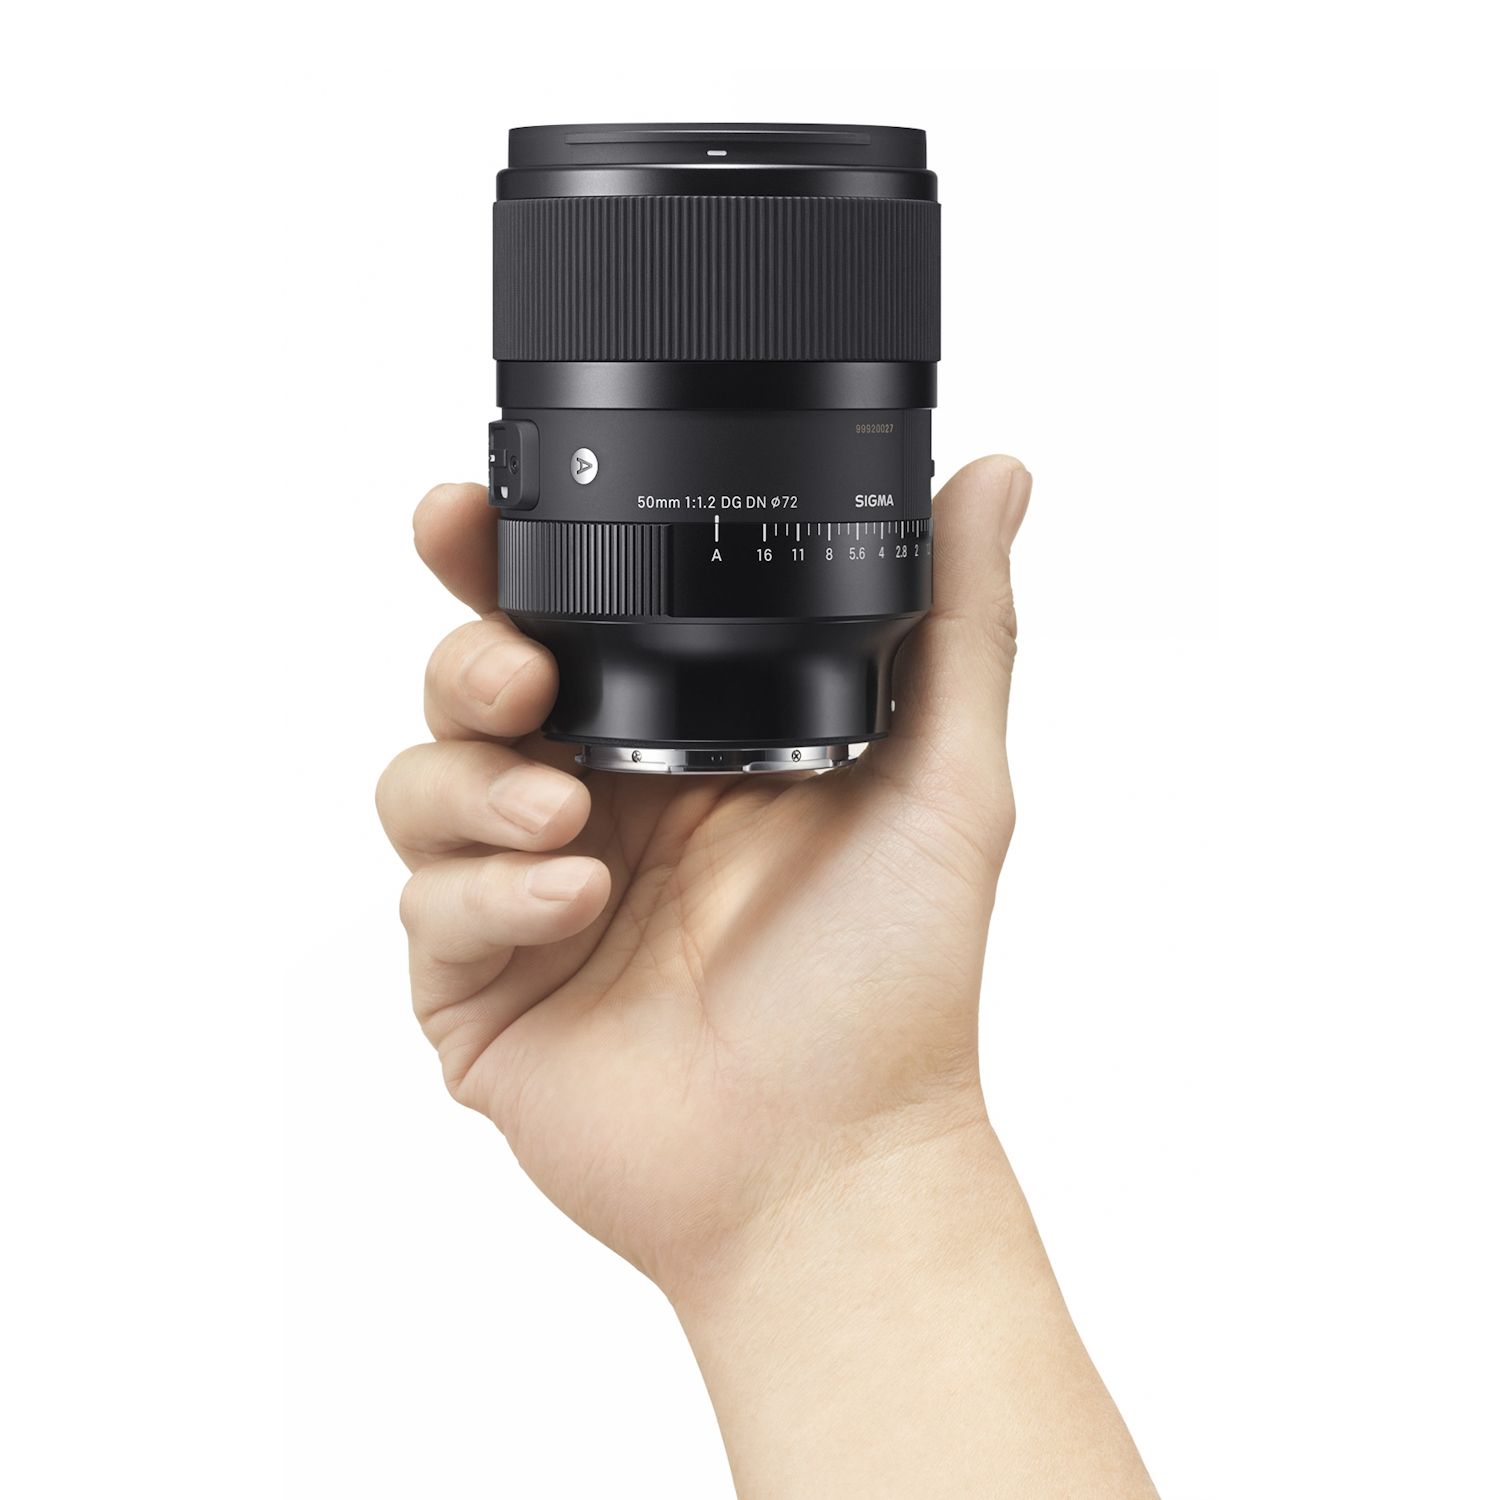 Sigma 50mm f/1.2 DG DN Art Lens for Sony E-Mount